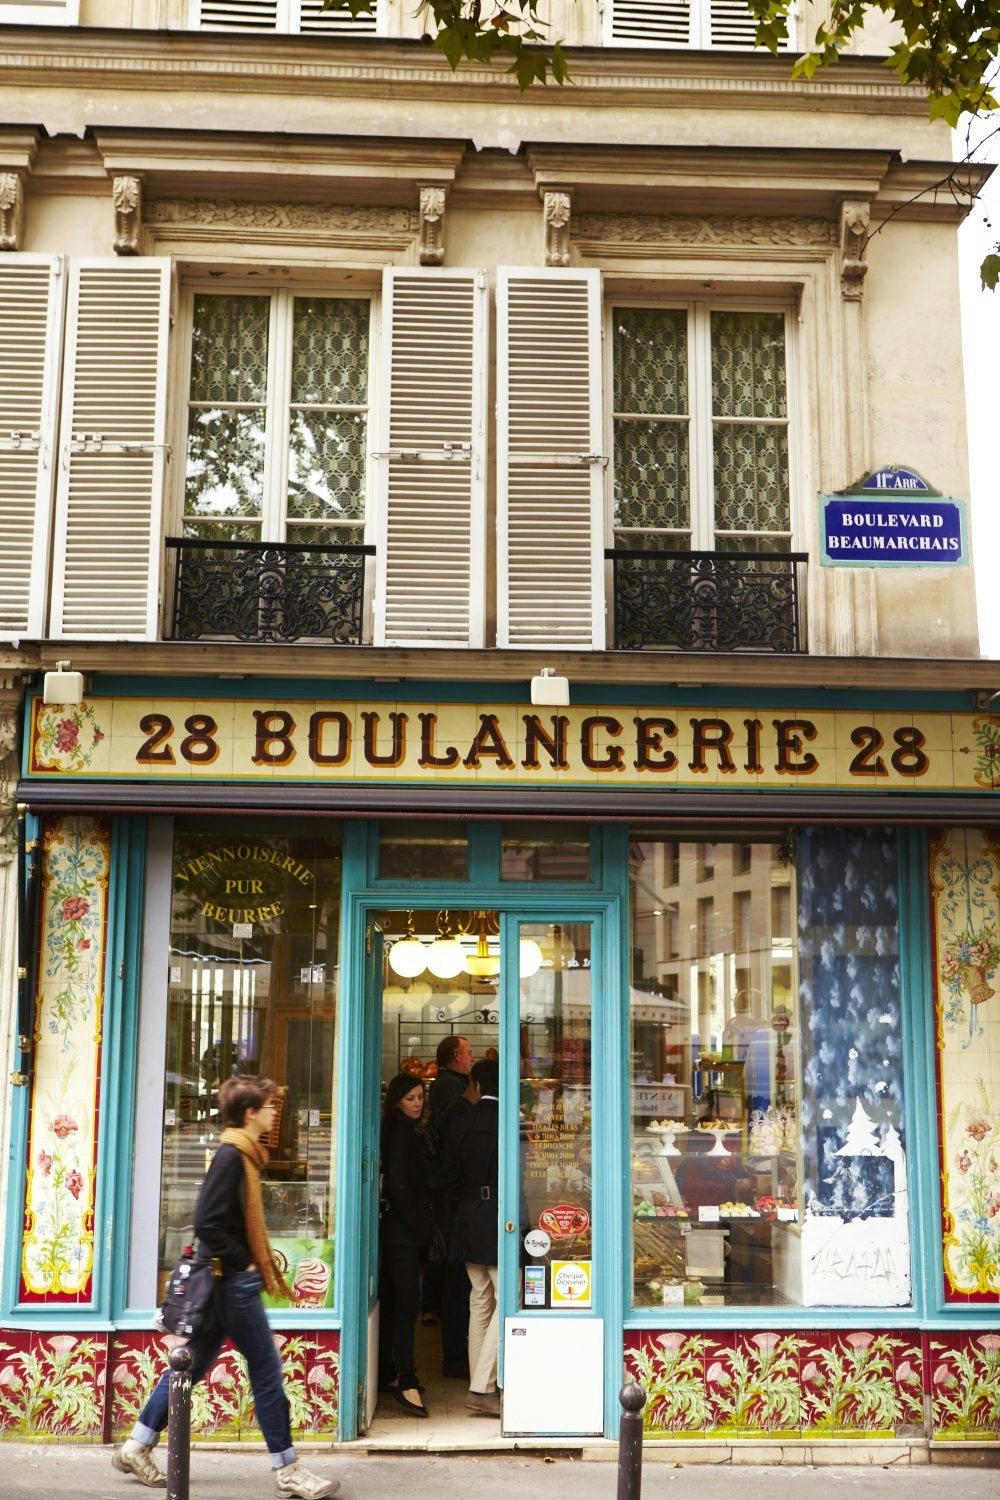 Woman walking past La Boulangerie, France.